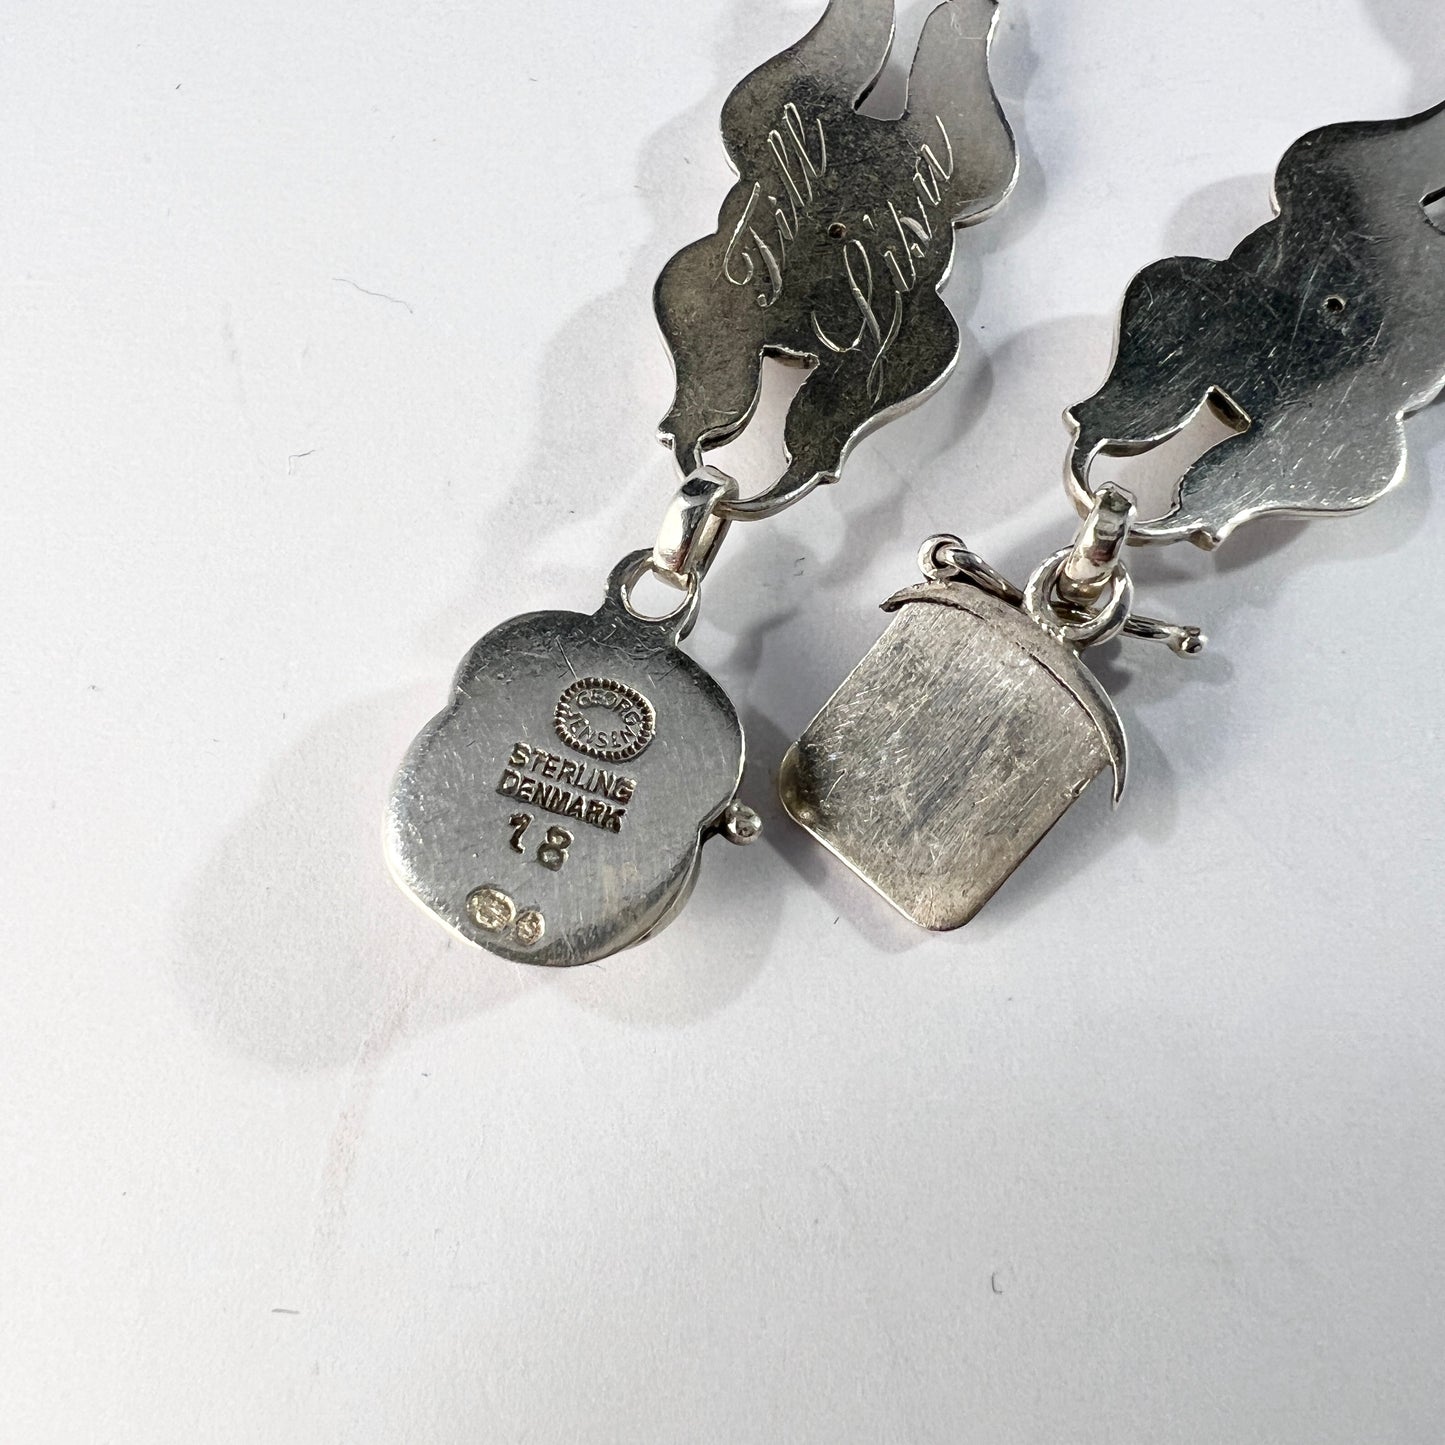 Georg Jensen, Denmark 1950. Vintage Sterling Silver Bracelet. Design 18.